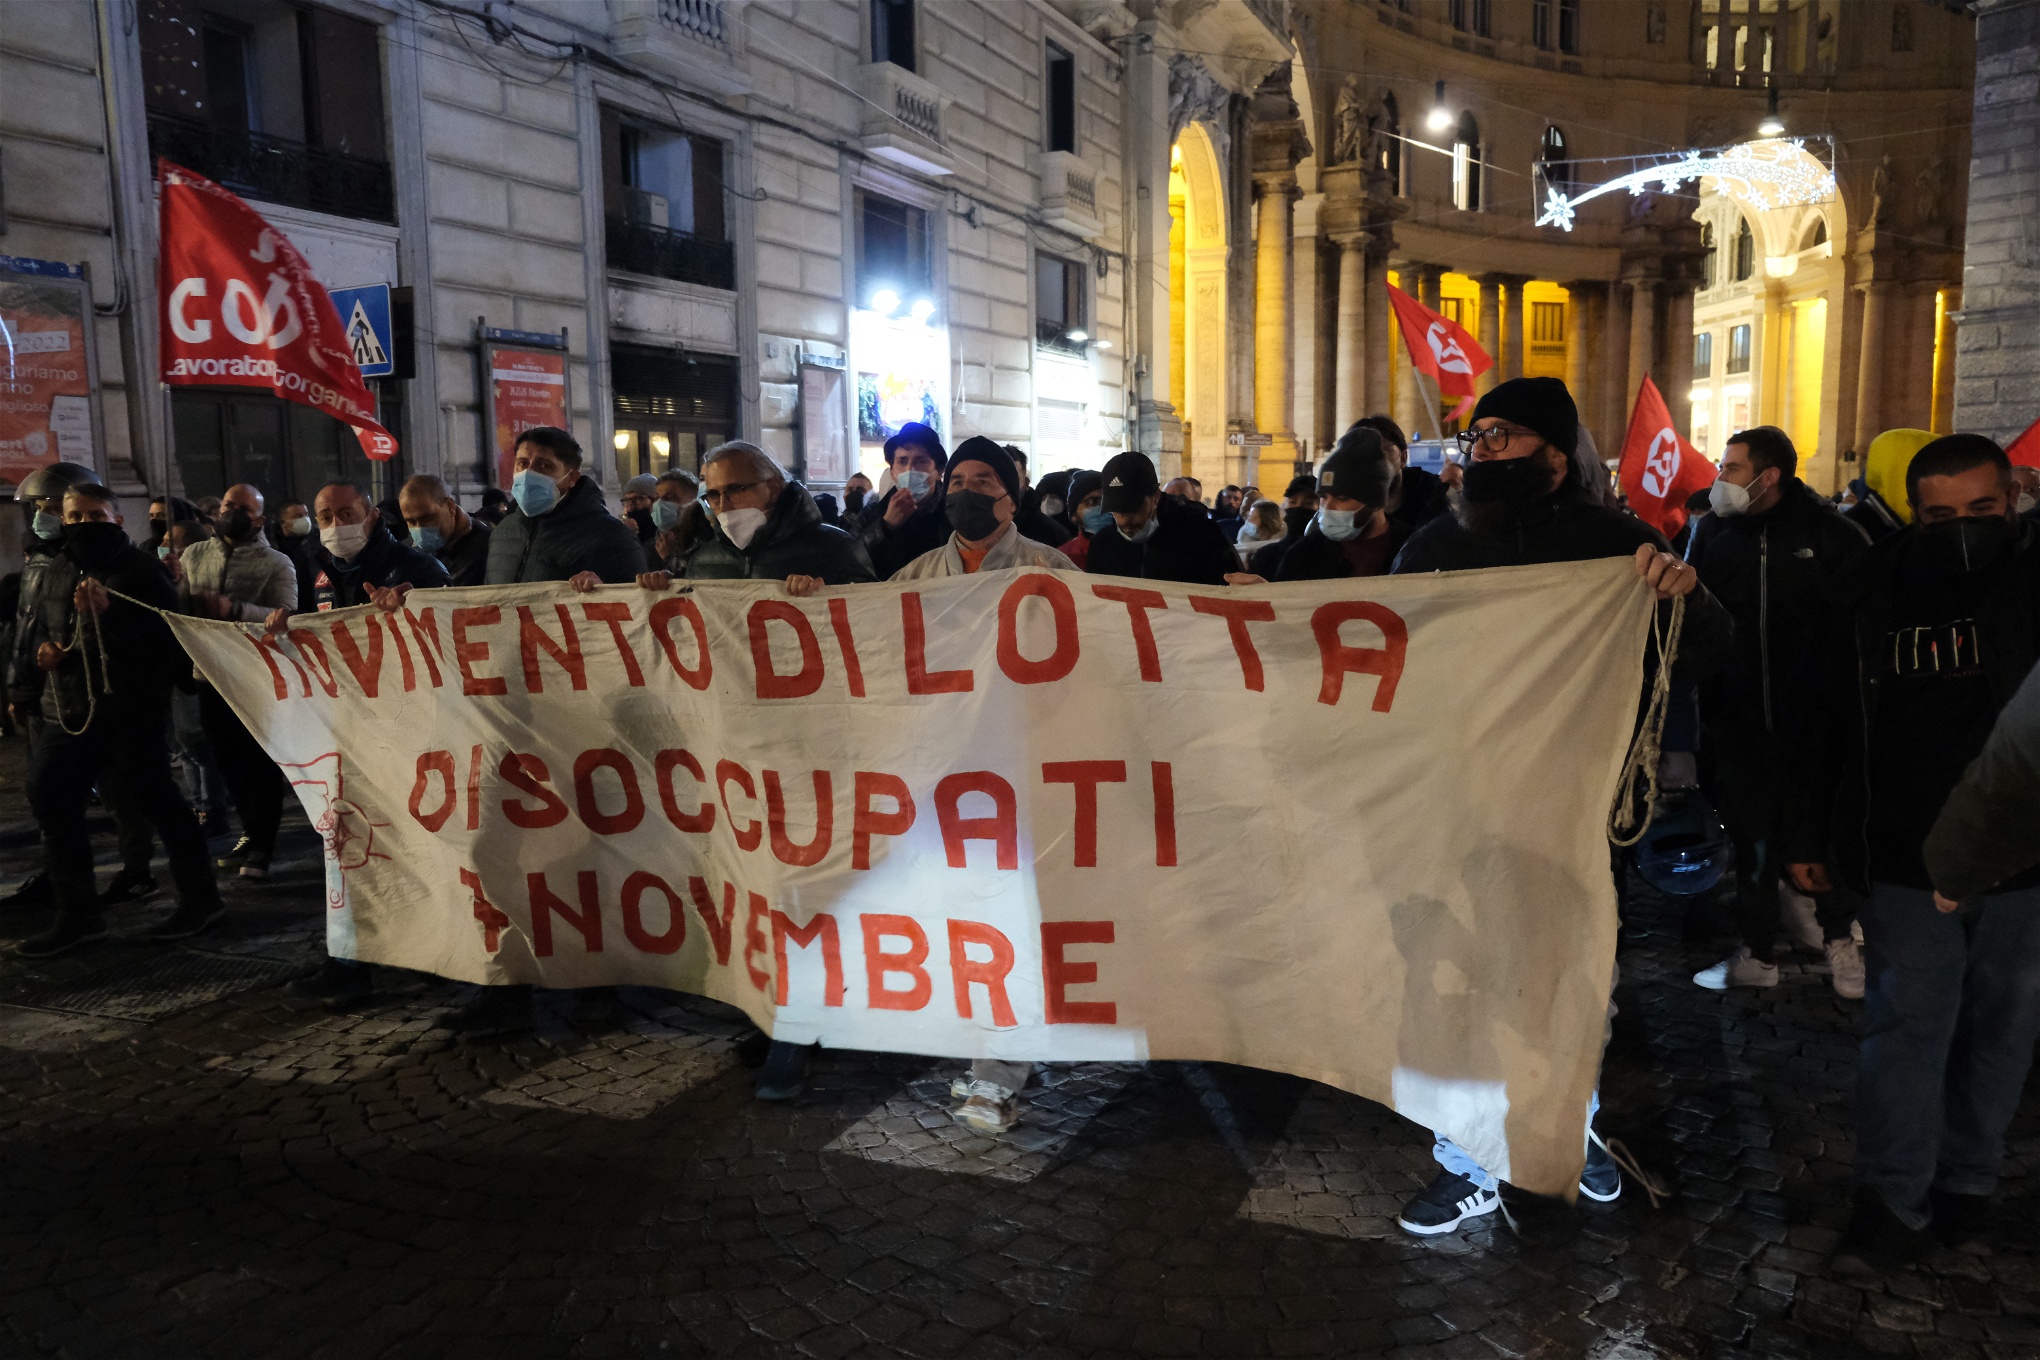 7-novemberrörelsen, som främst organiserar arbetslösa, utlyste demonstrationen på Plebiscito-torget i centrala Neapel. Foto: Julia Lindblom